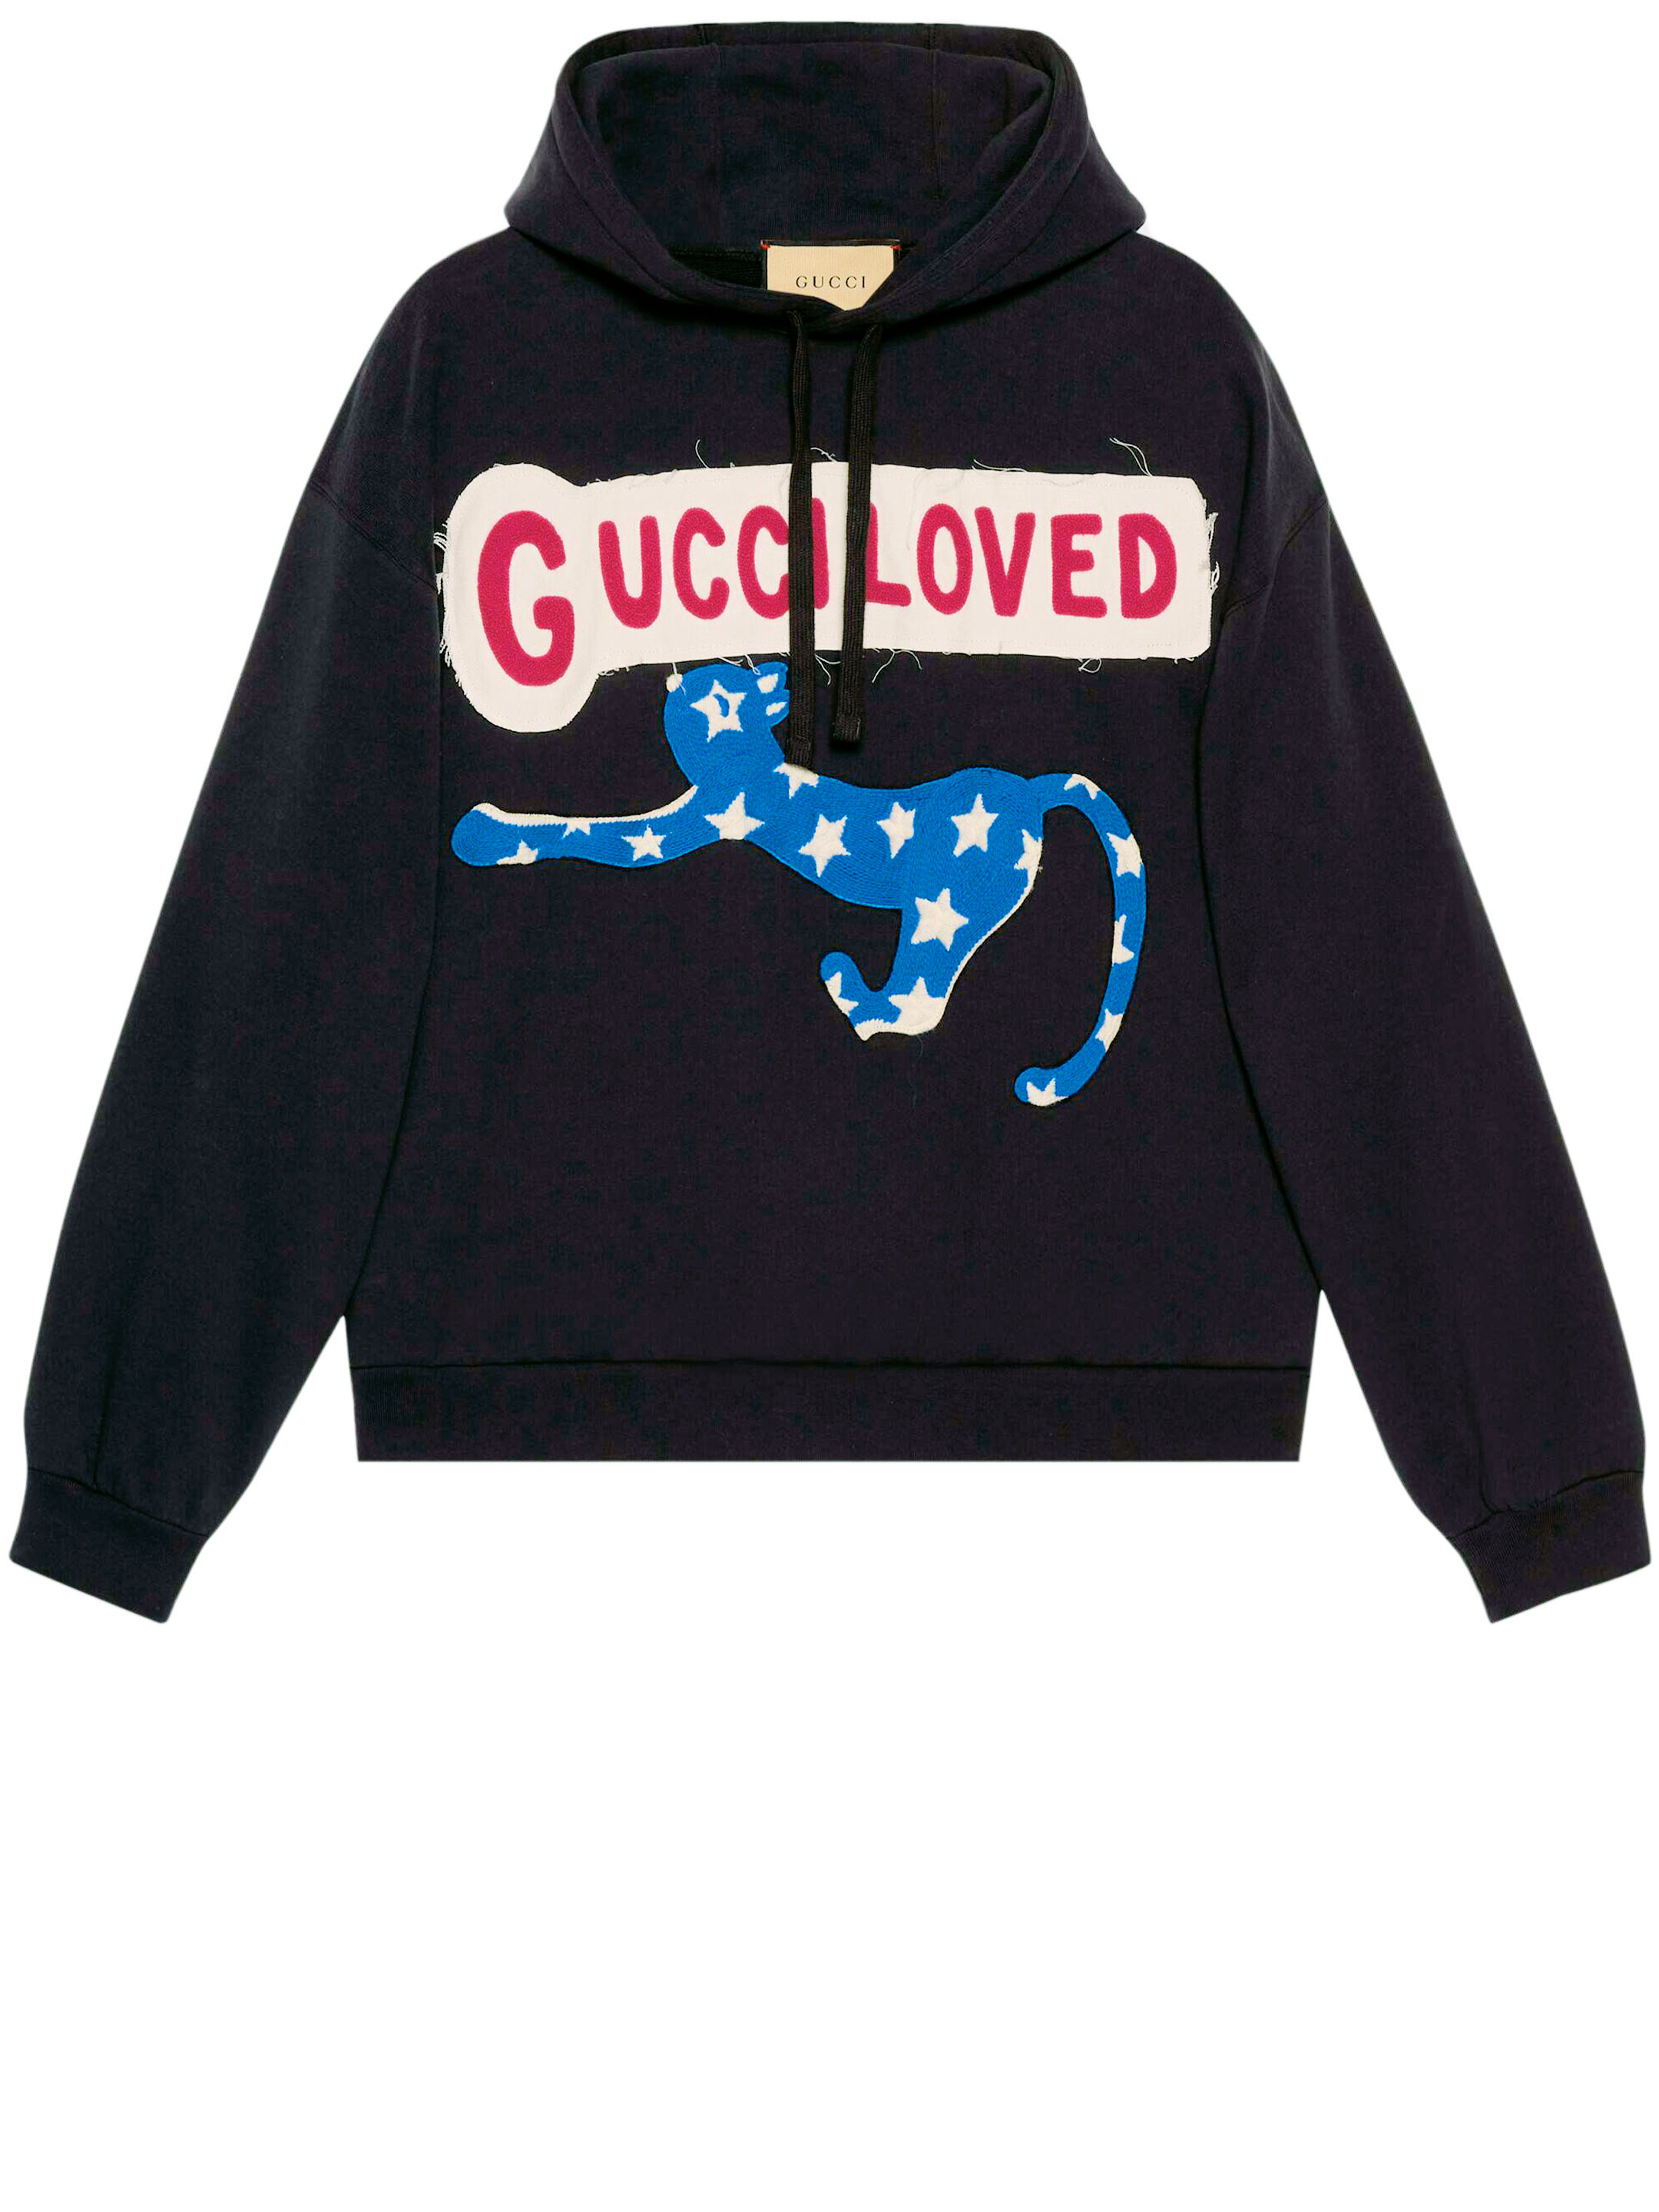 Худи Gucci Gucci Loved, серый цена и фото